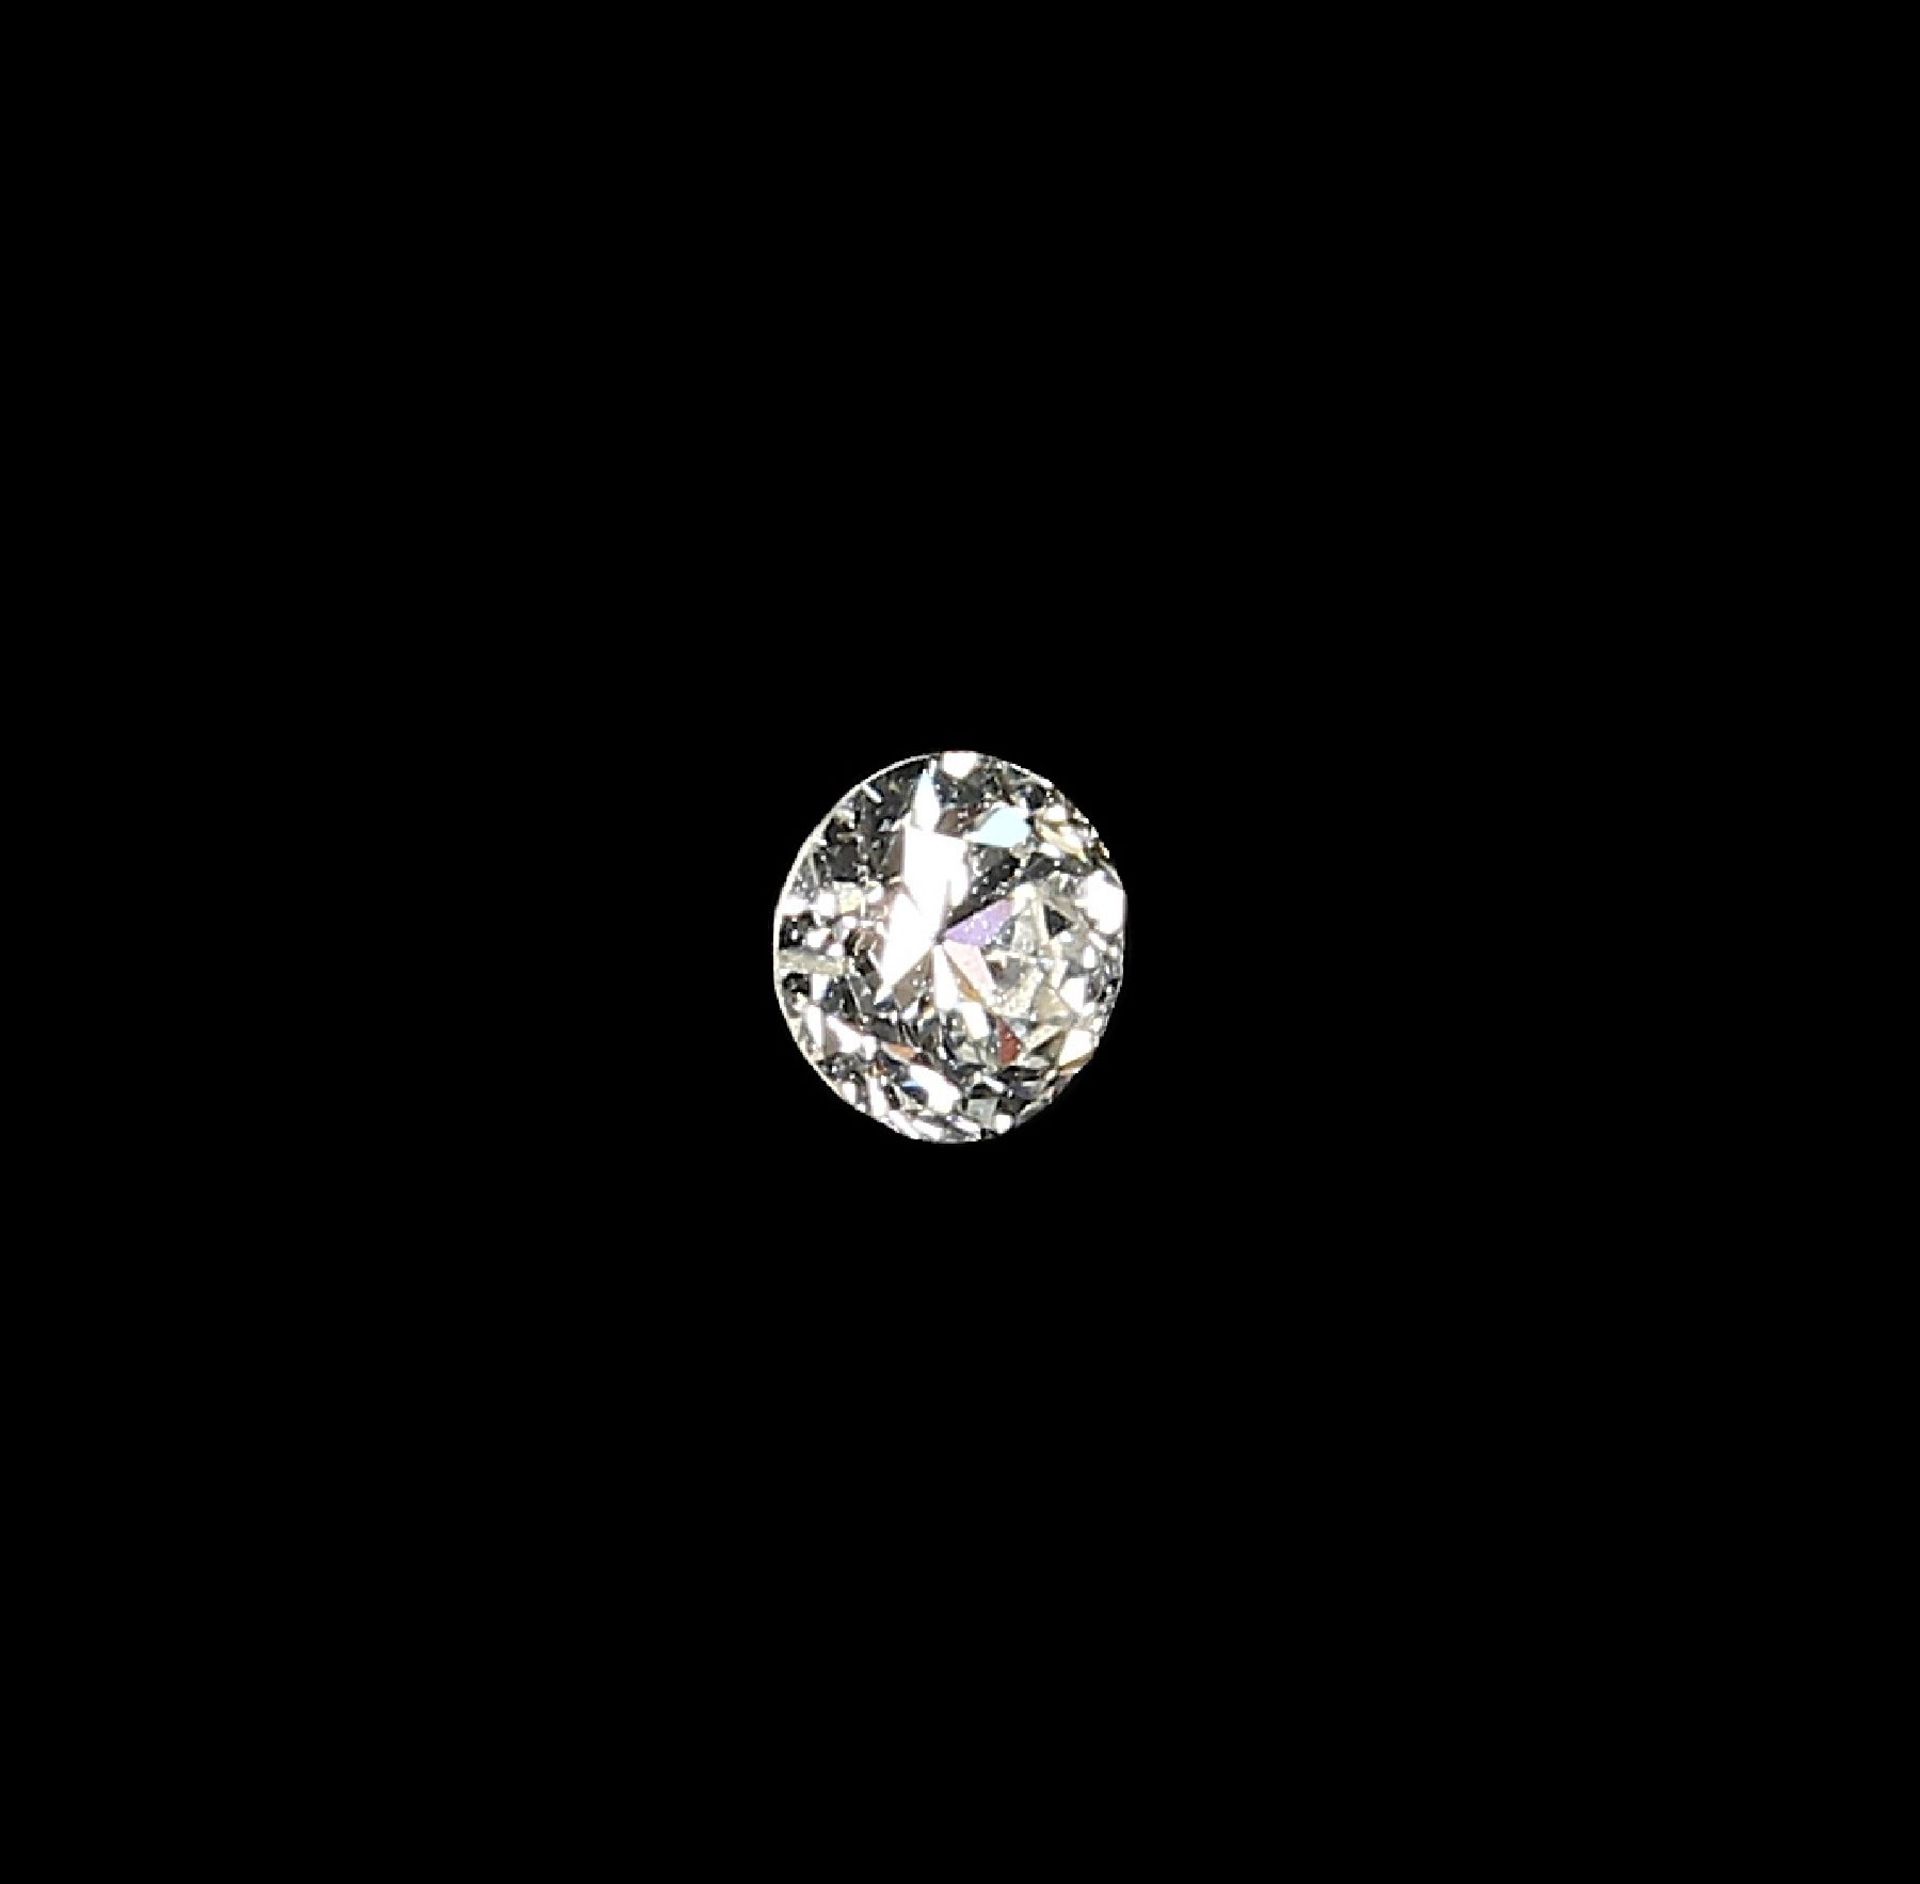 Loser Altschliffdiamant ca. 0.41 ct l.get. Weiß/p Schätzpreis: 650, - EURLoose old cut diamond